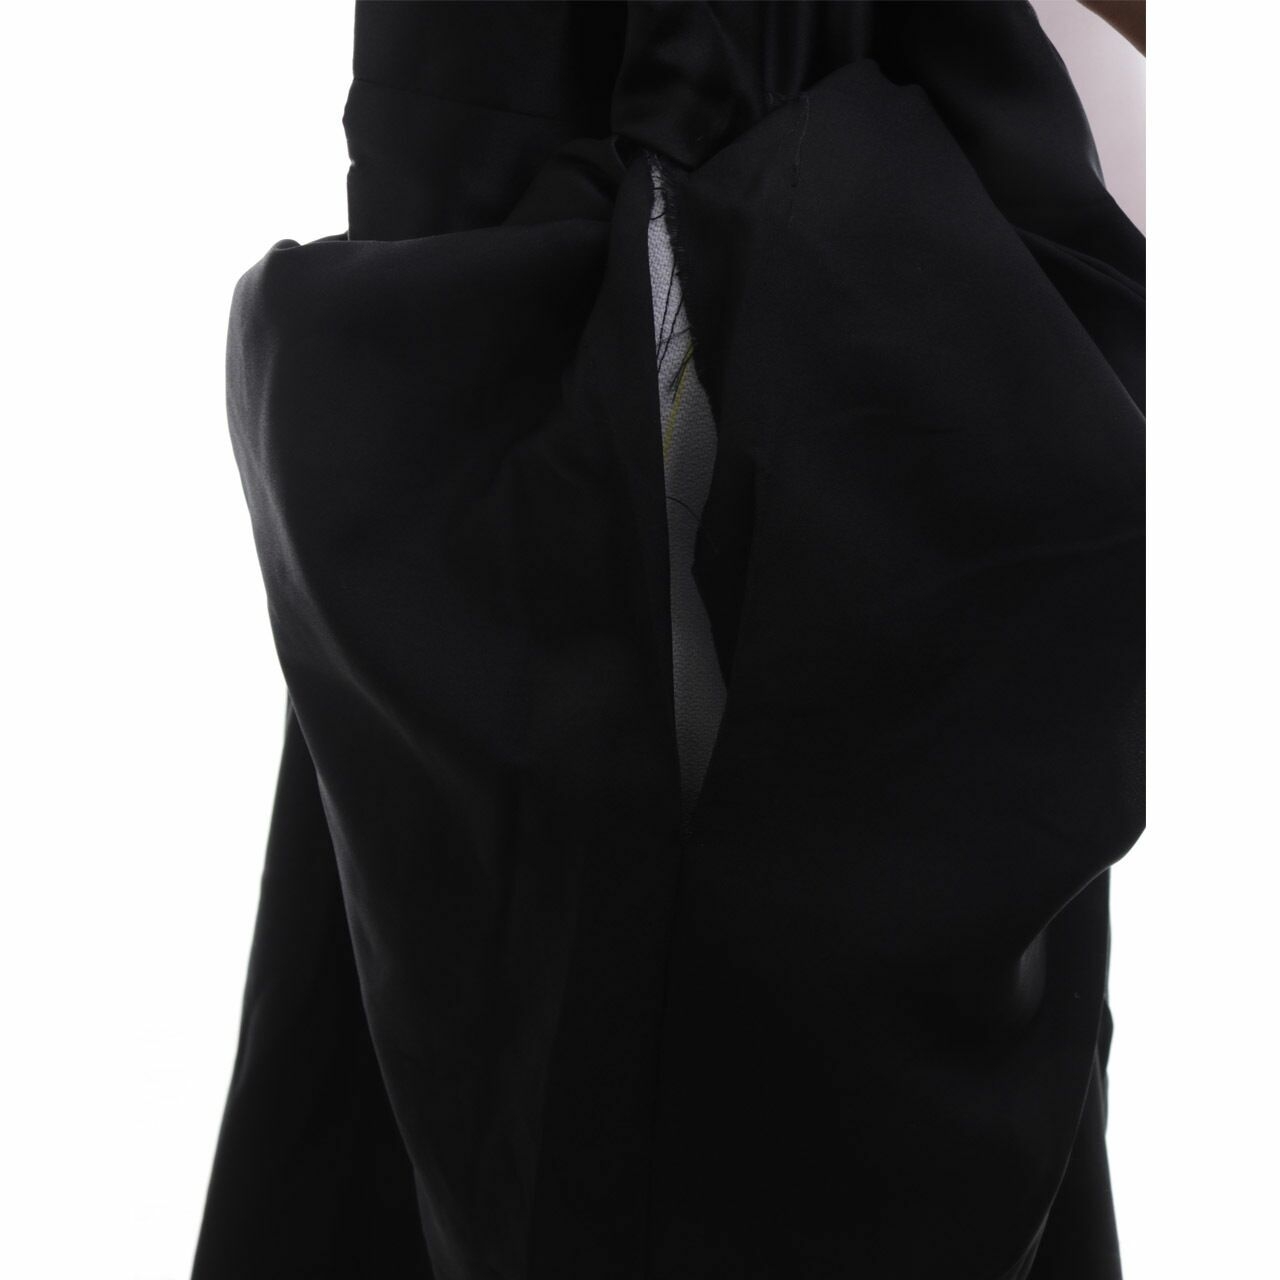 Ingrid Husodo Black with Inner Pants Slit Long Dress